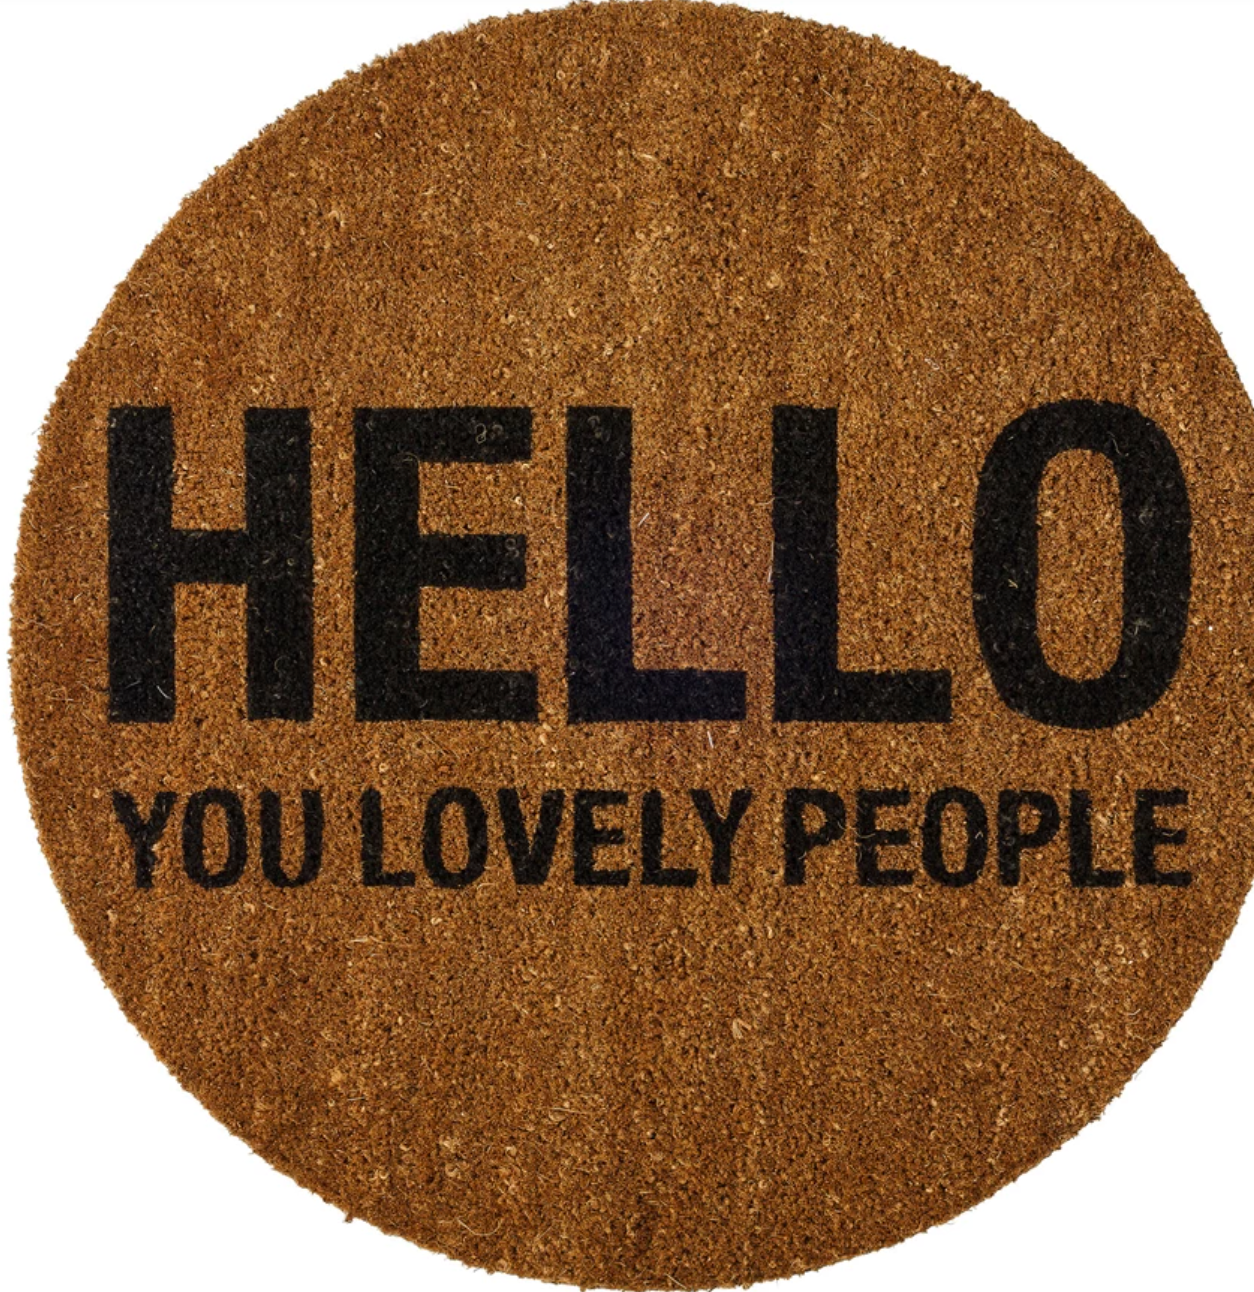 Hello Lovely People Doormat